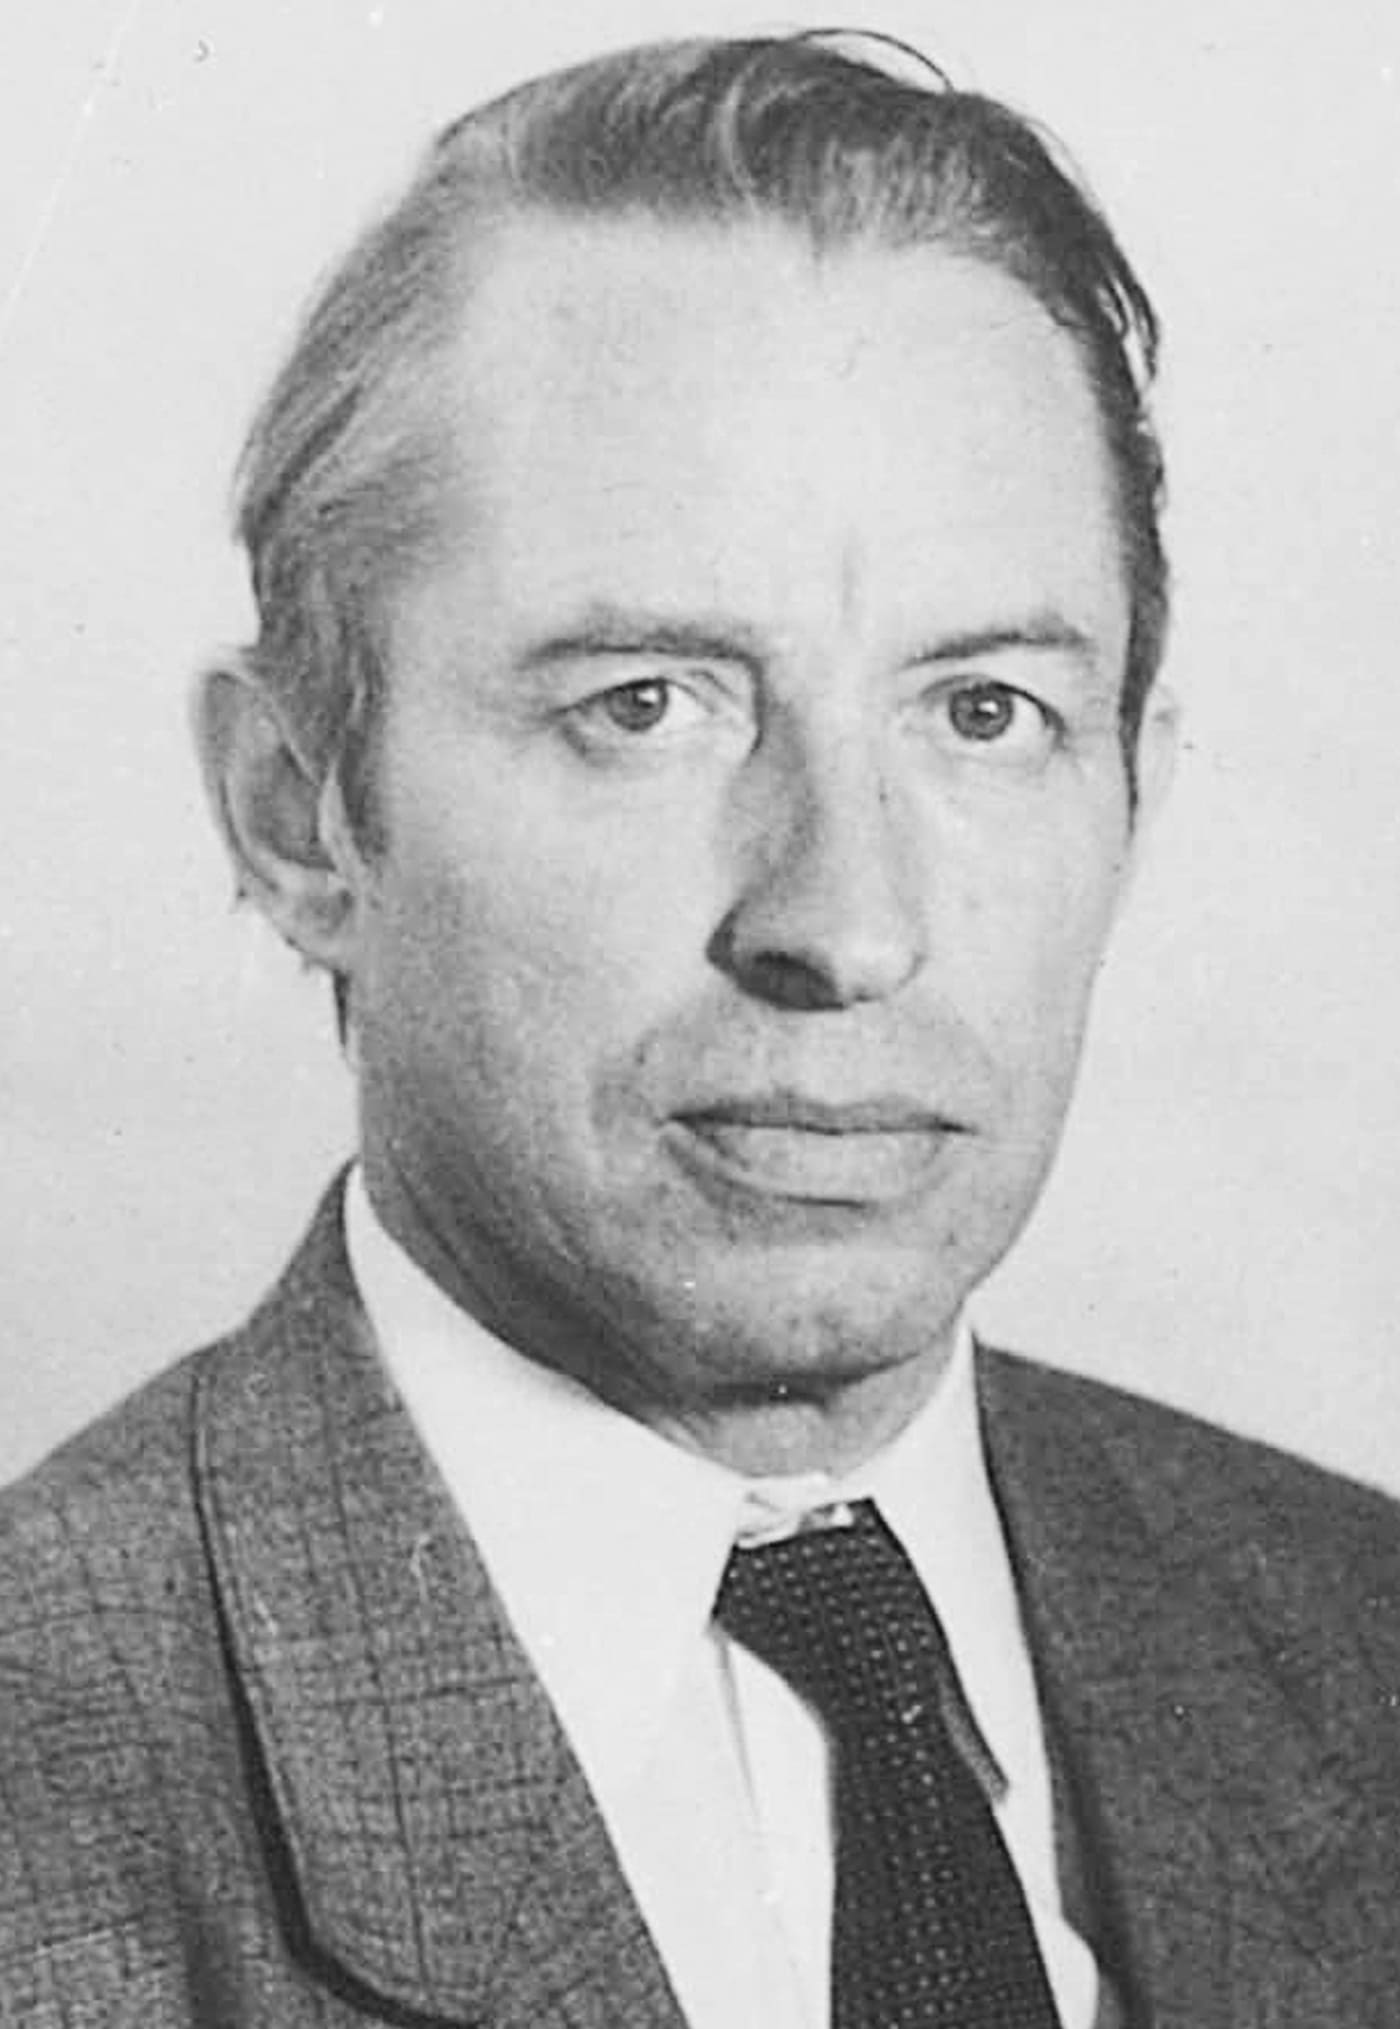 Качанов Адольф Владимирович- учитель физики